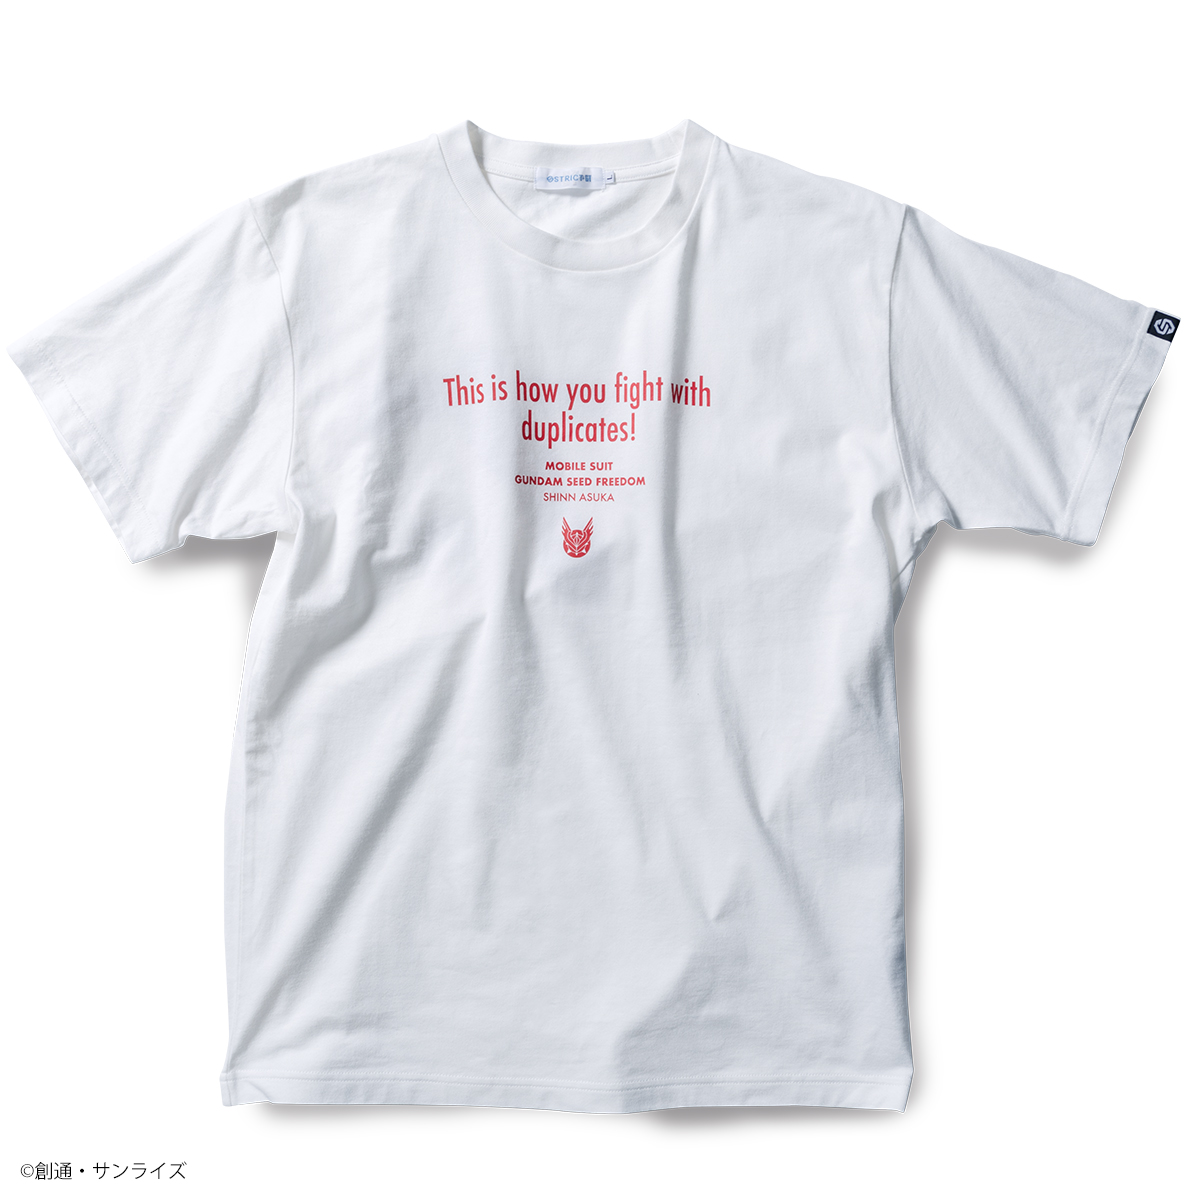 『機動戦士ガンダムSEED FREEDOM』よりFamous Lines第4弾となる劇中の名セリフデザインの新作Tシャツが登場!